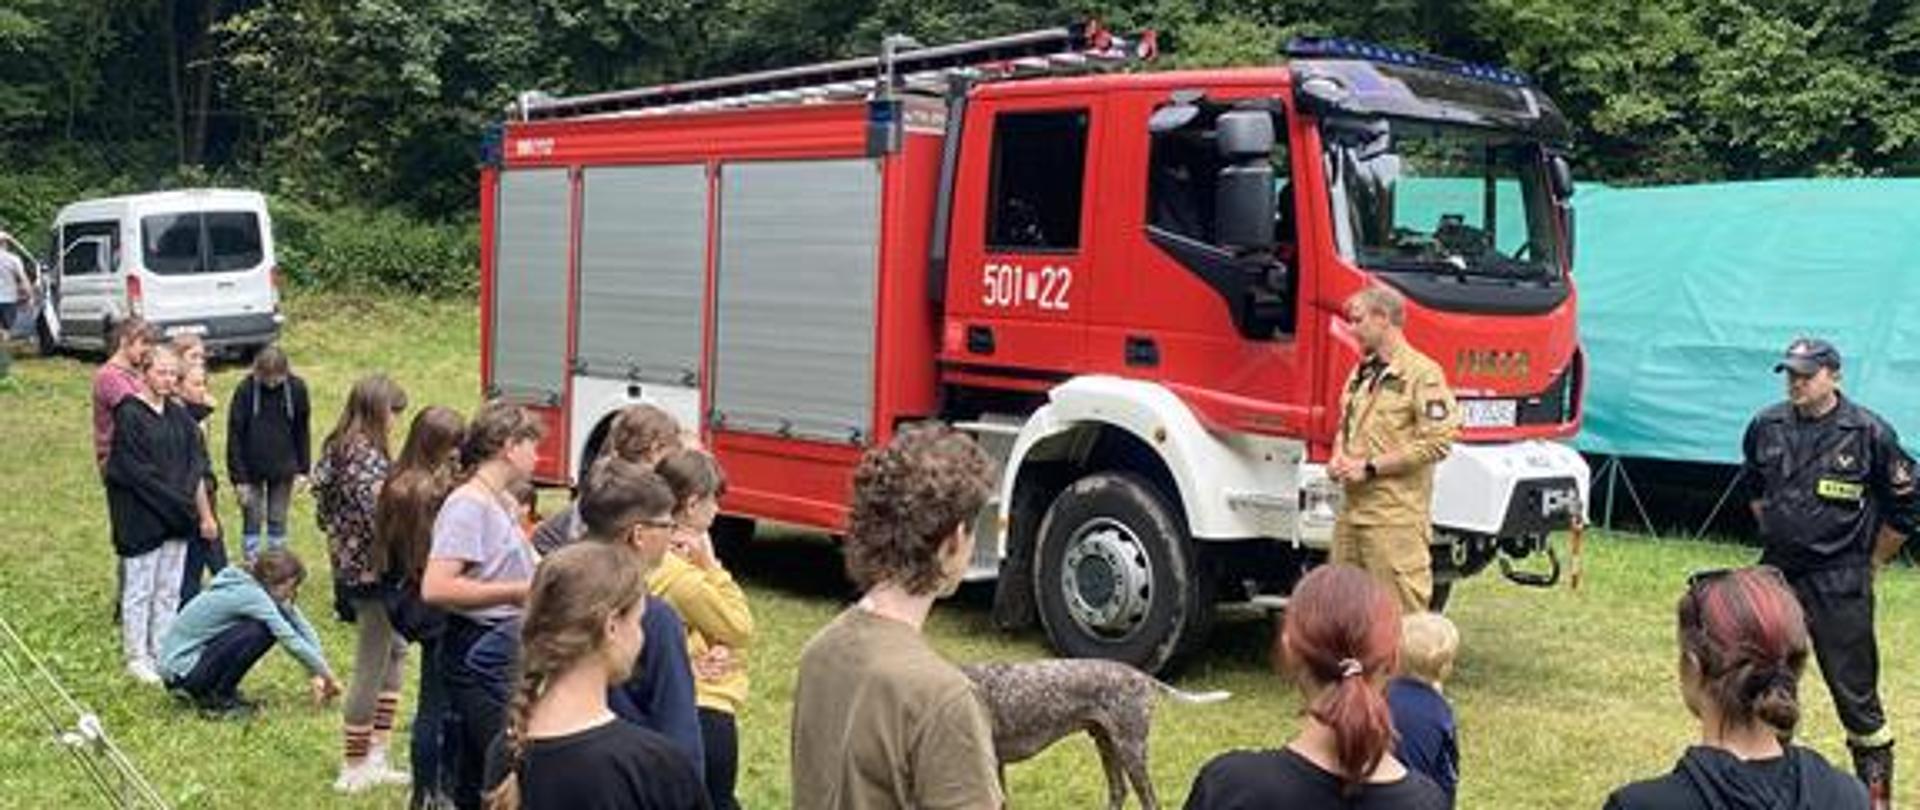 Na zdjęciu widzimy grupę ludzi stojących w lesie na terenie obozu harcerskiego. Widać też Strażacki pojazd ratowniczy oraz strażaków udzielających instruktażu harcerzom. .